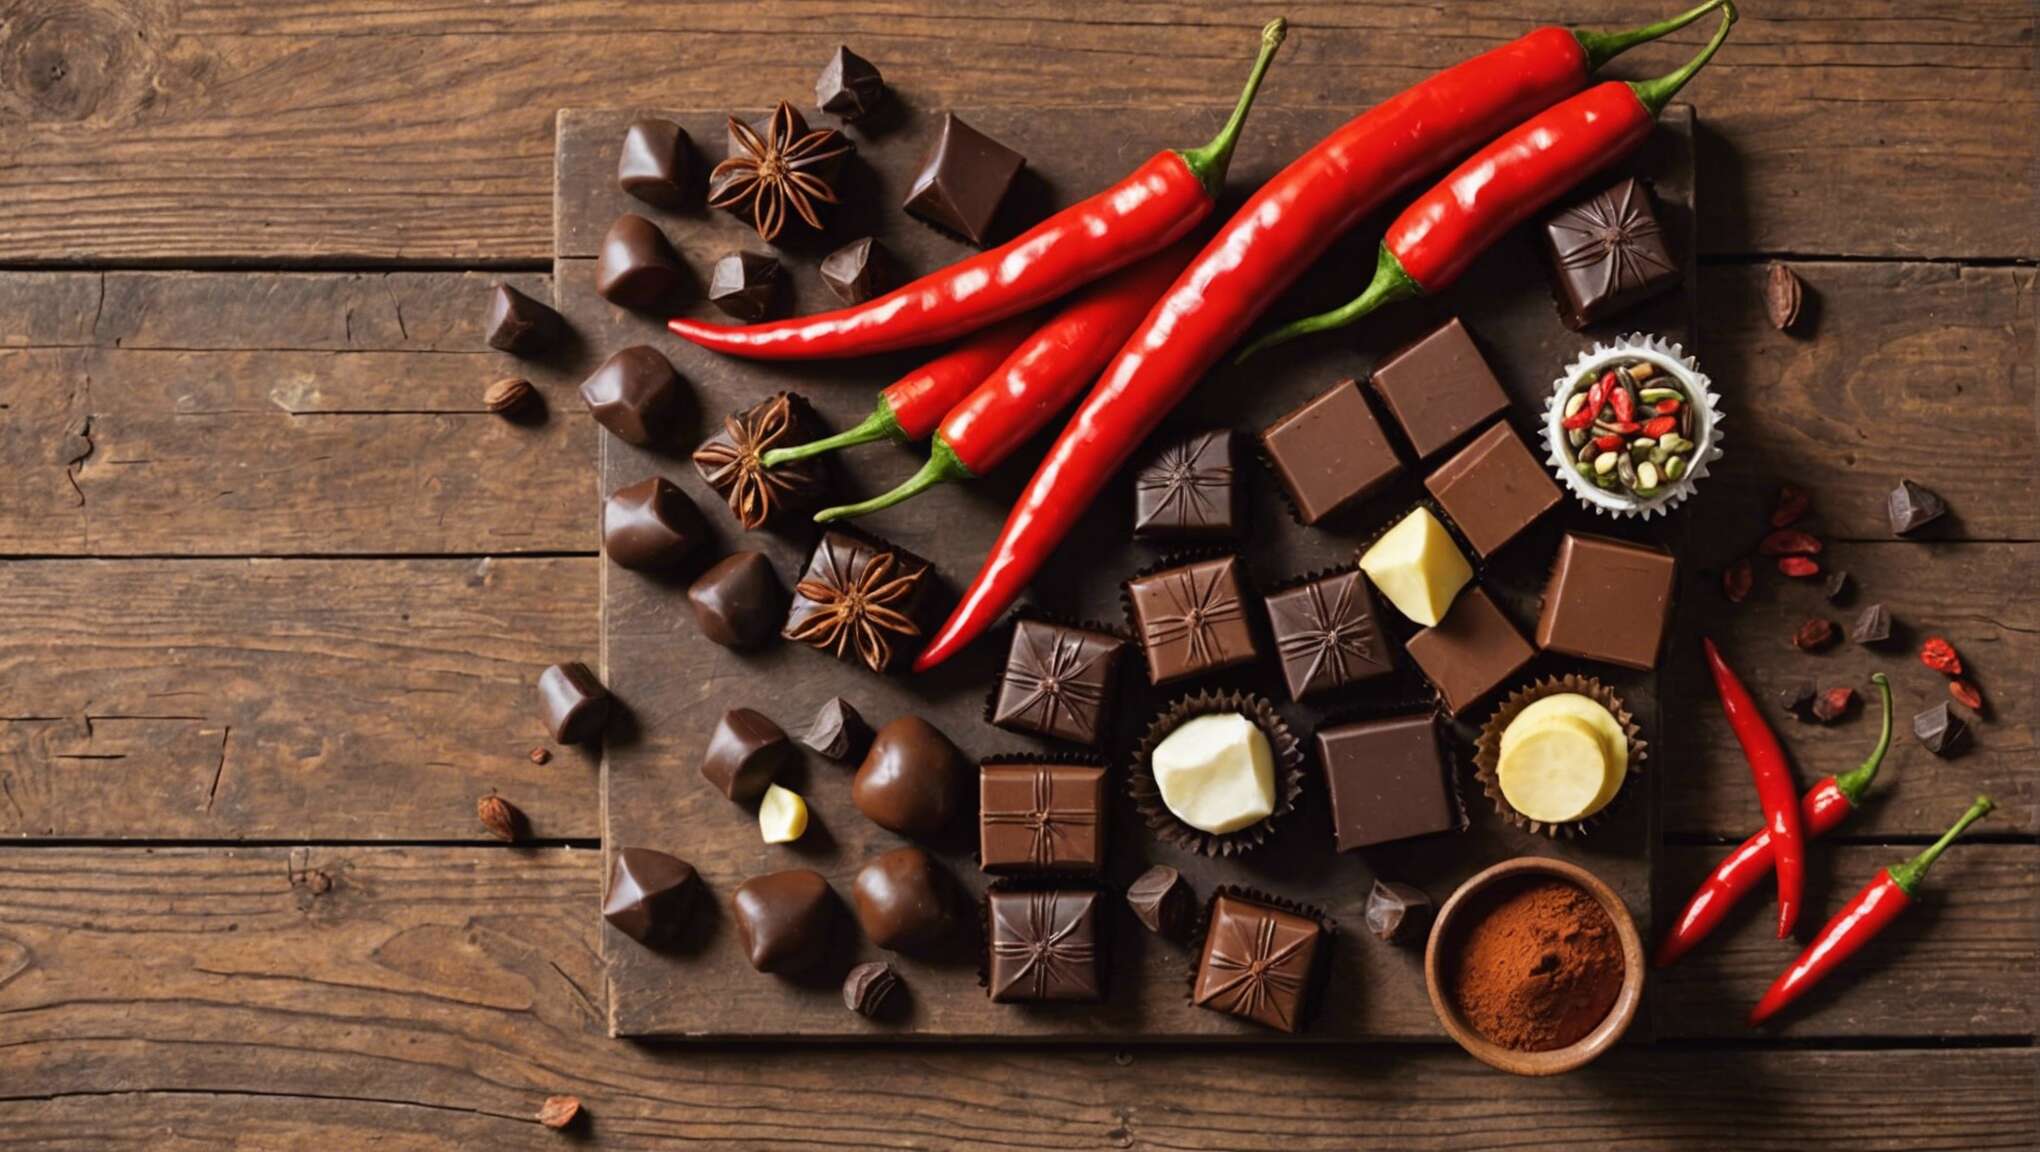 Choisir les bons ingrédients : sélectionner le chocolat et le type de piment